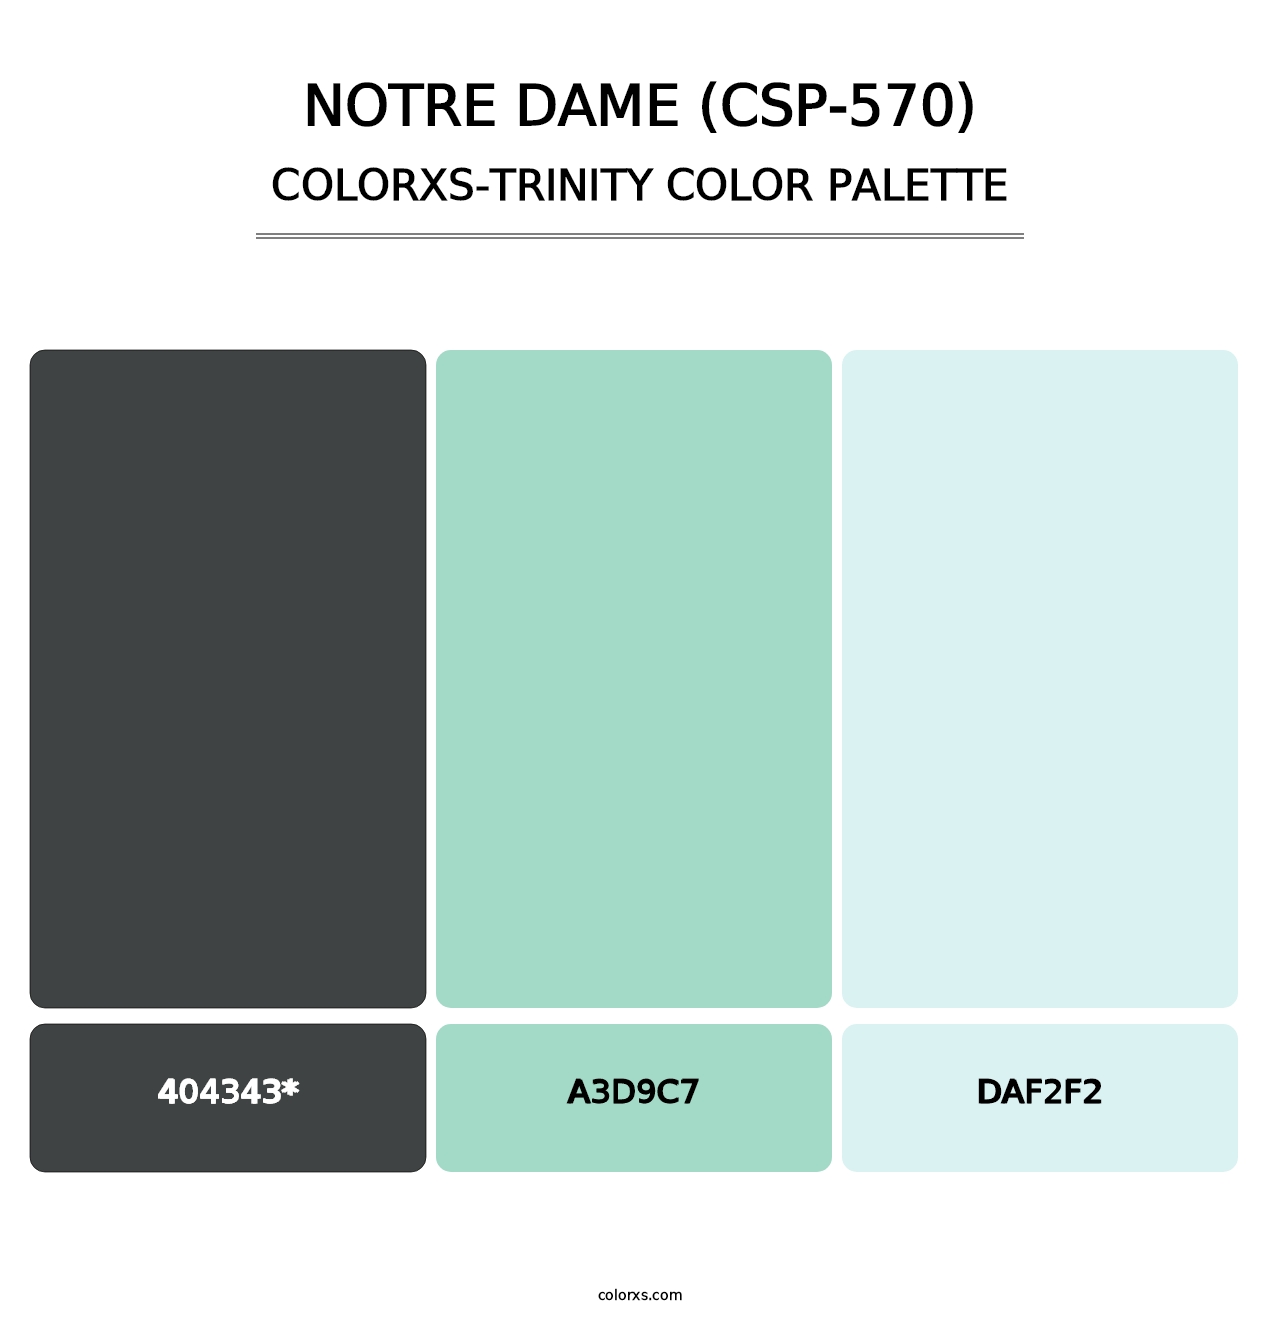 Notre Dame (CSP-570) - Colorxs Trinity Palette